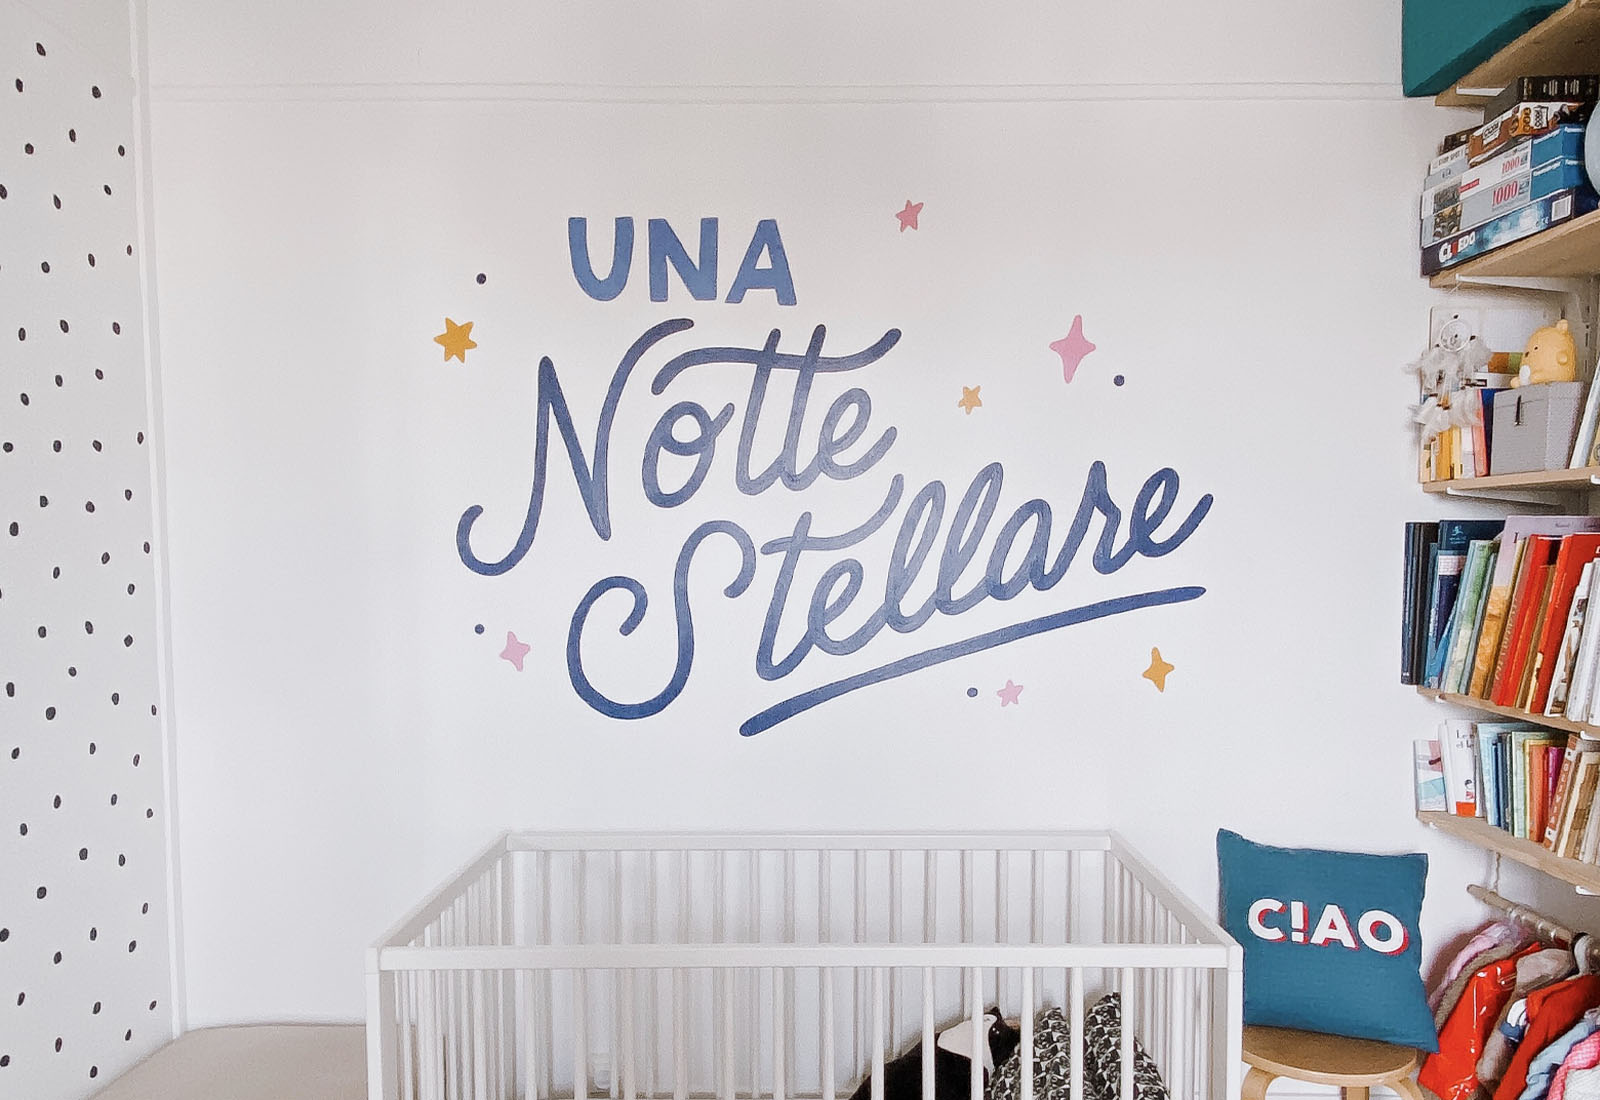 painted mural in baby room